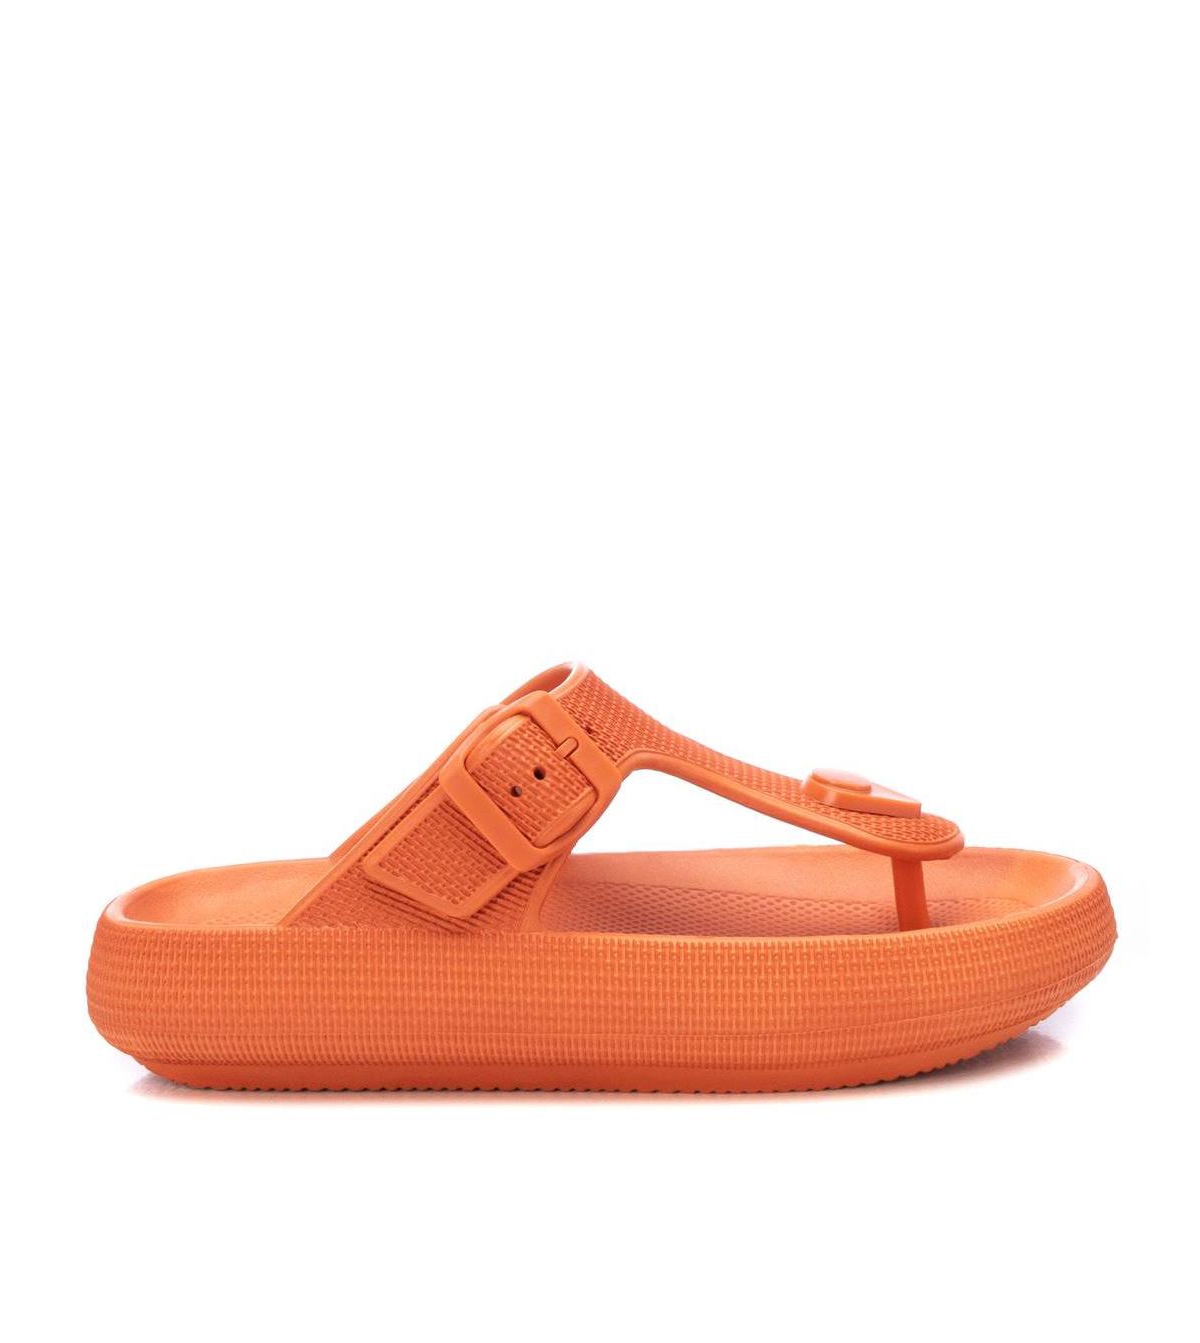 conservatief aankunnen Peave Xti Women's Rubber Flip Flops Sandals By In Orange | ModeSens